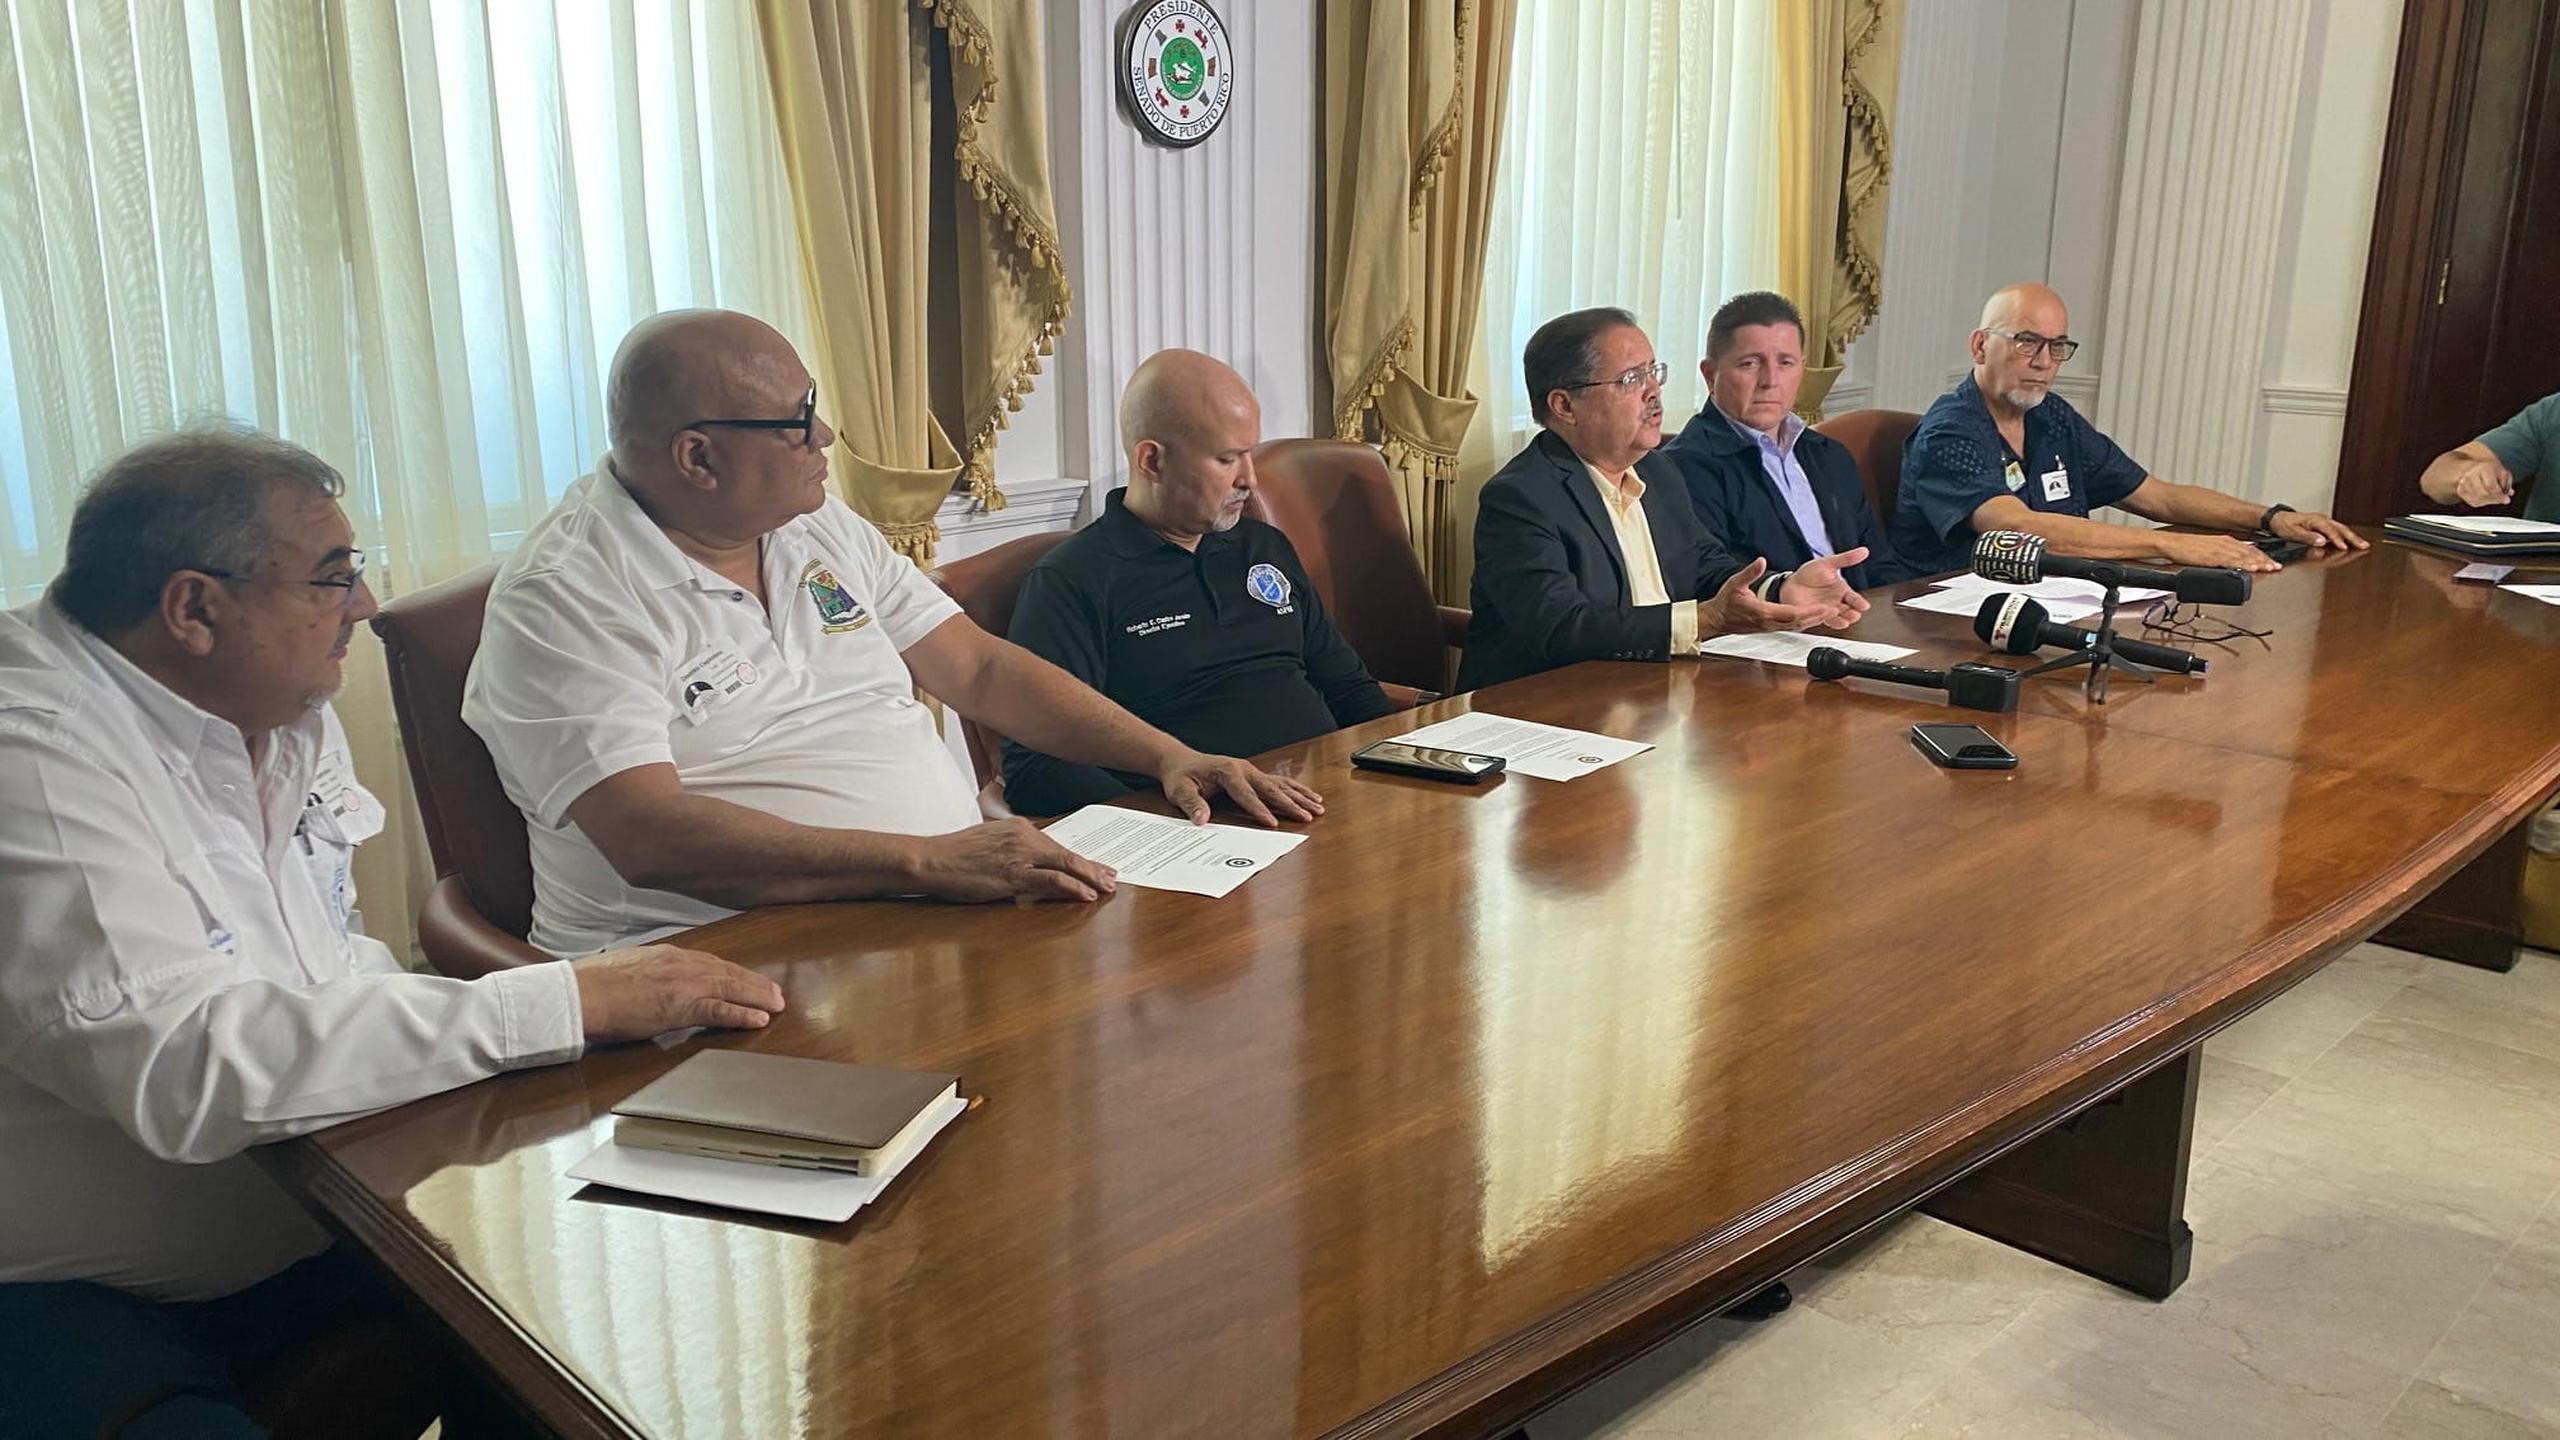 El presidente del Senado, José Luis Dalmay se comprometió a aprobar el reglamento que finalmente garantizará los fondos para el retiro de los policias.